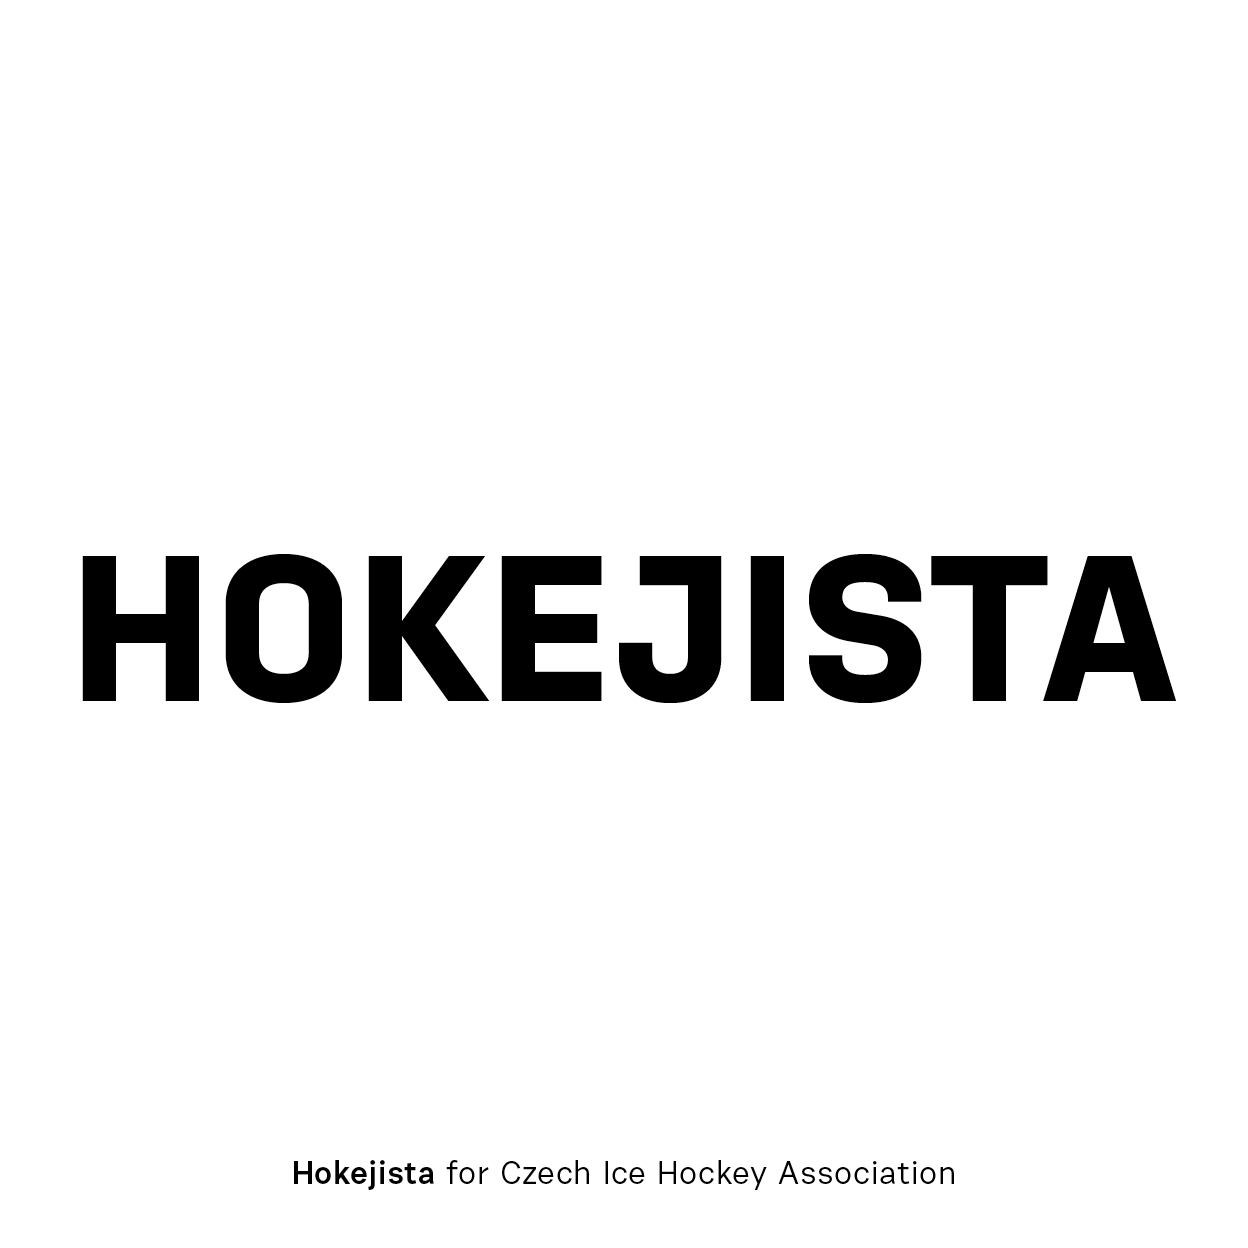 Ejemplo de fuente Hokejista (Czech Ice Hockey)